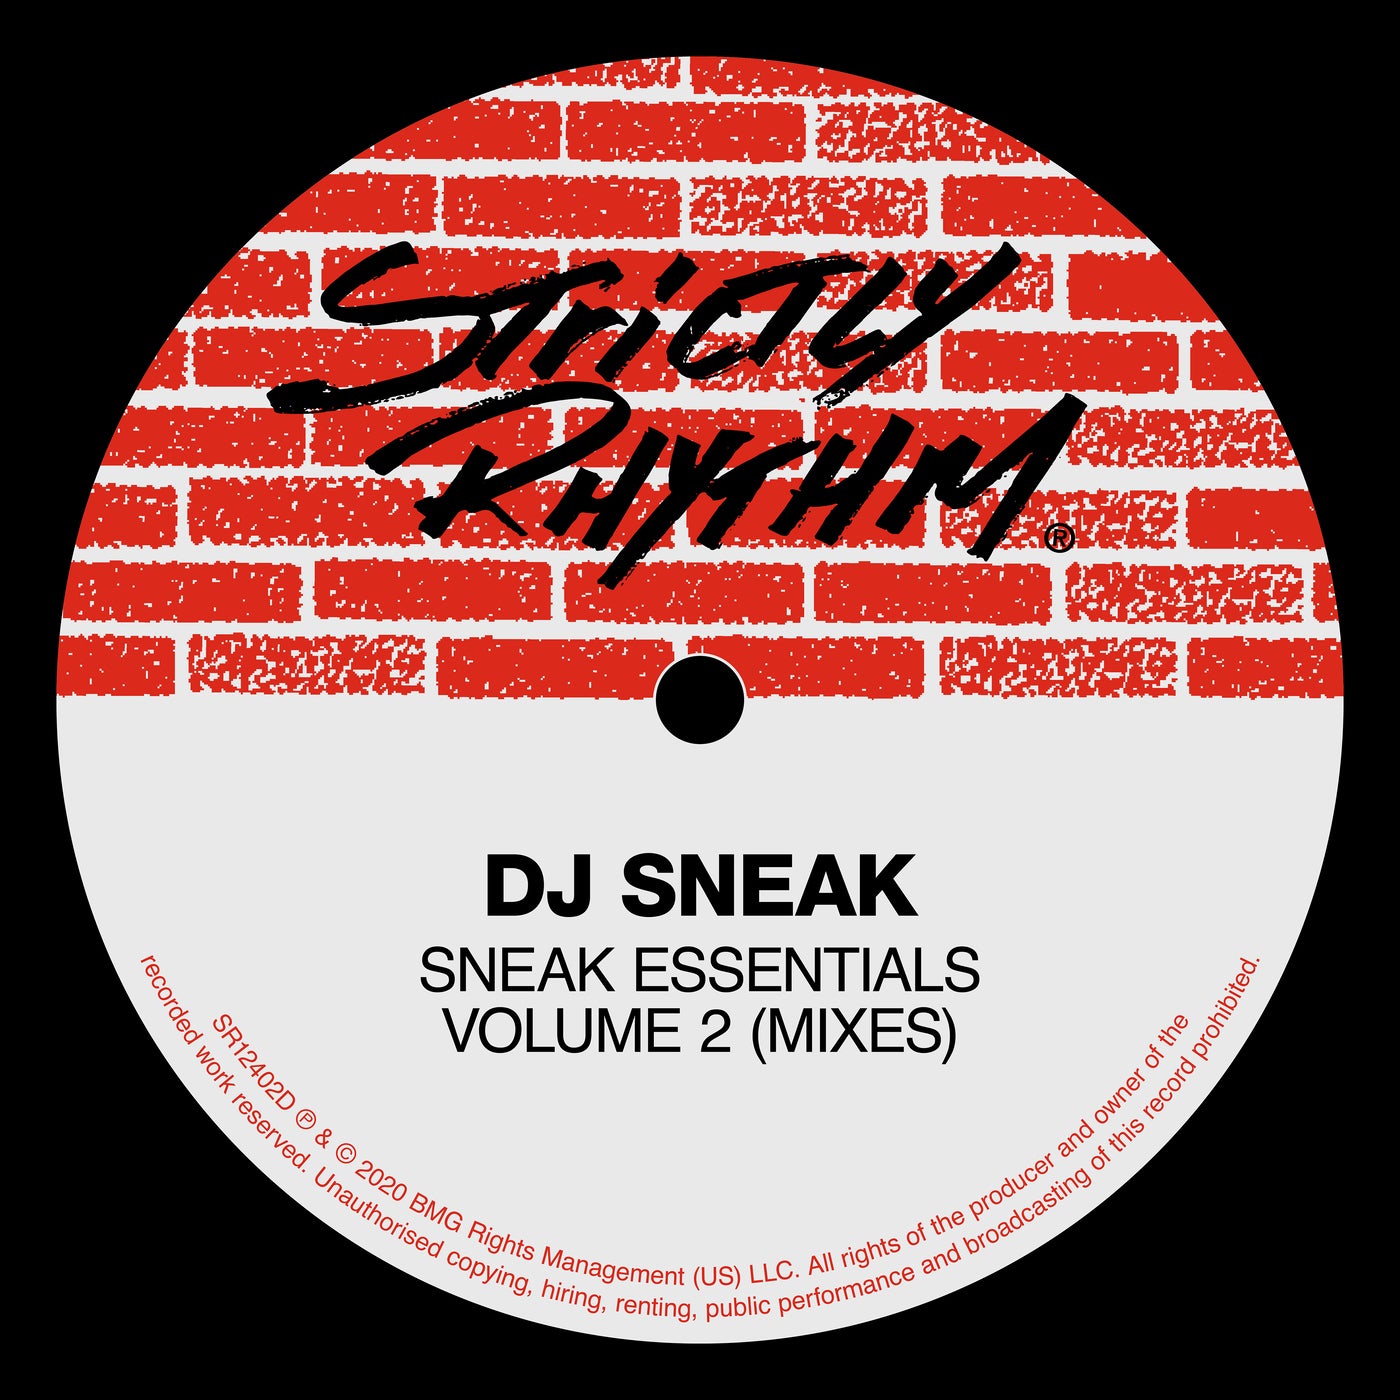 Sneak Essentials, Vol. 2 (Mixes) by DJ Sneak on Beatsource